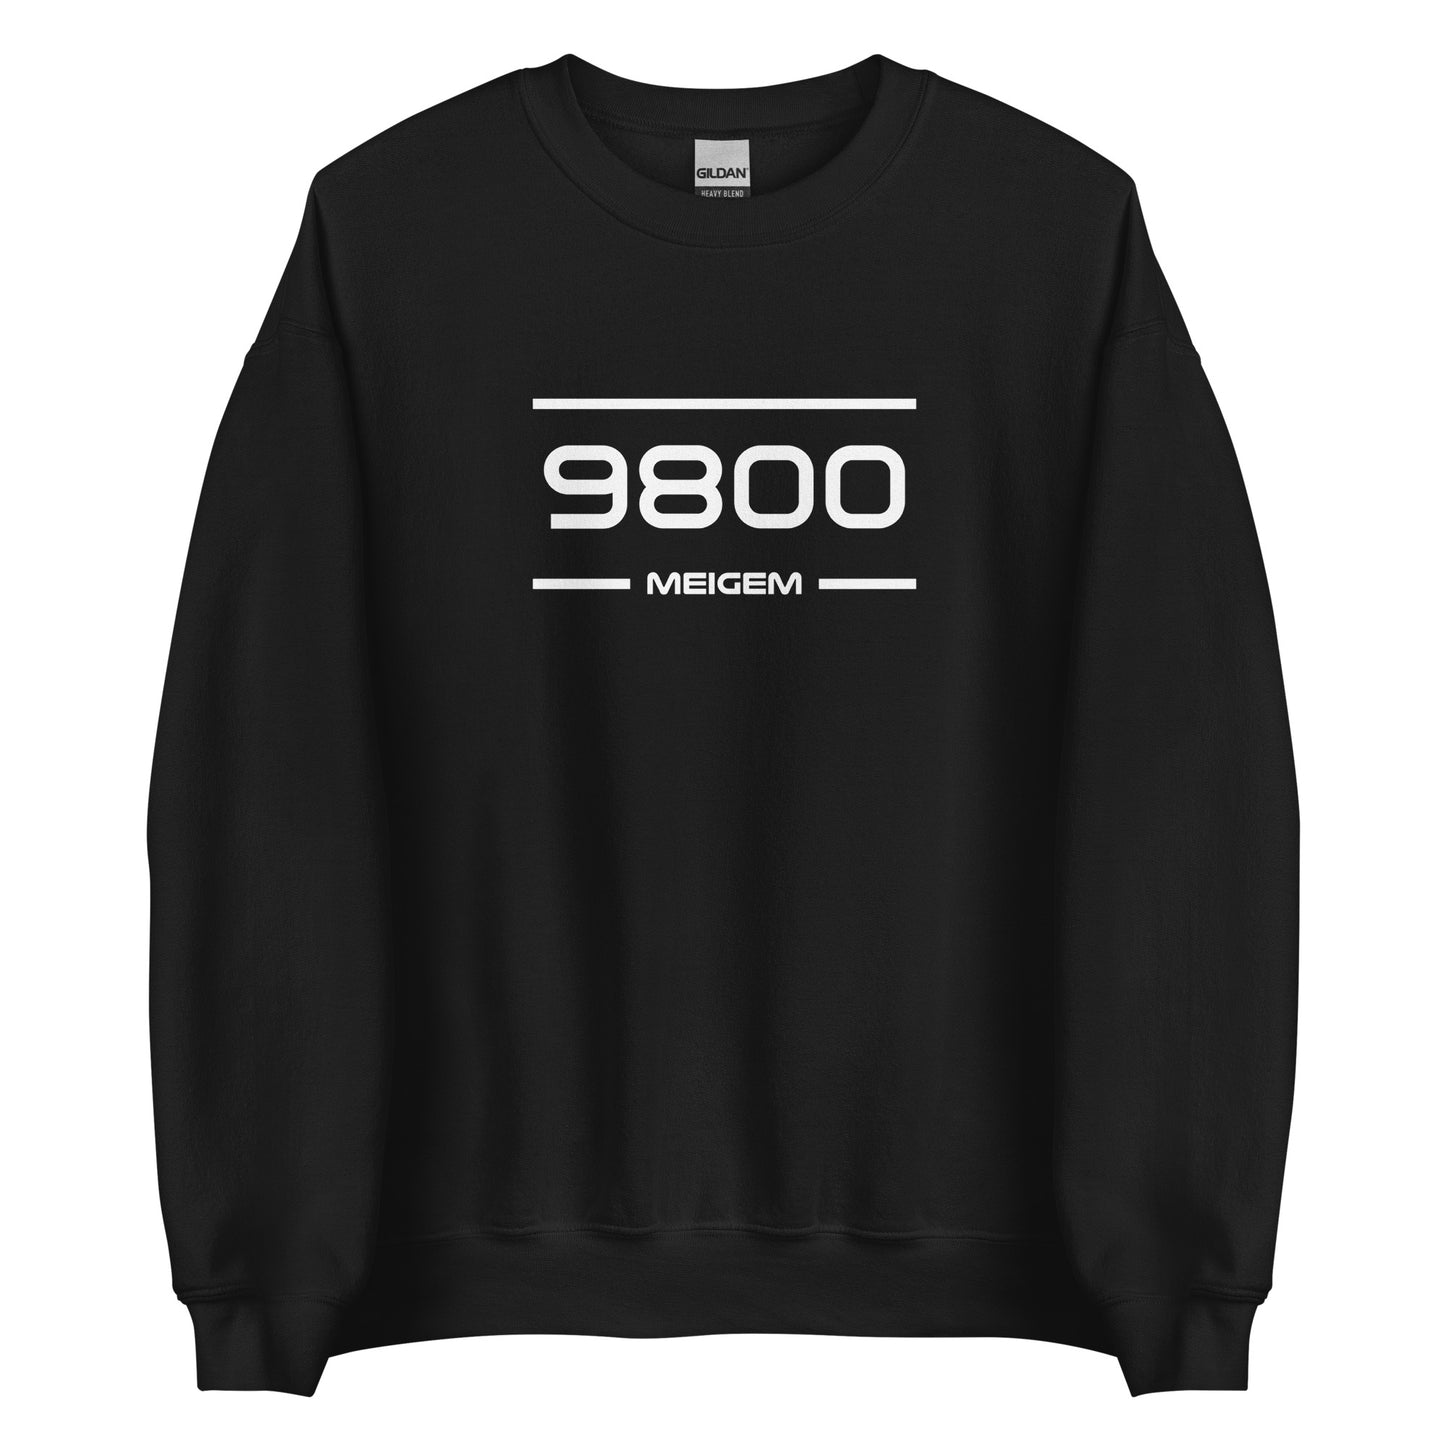 Sweater - 9800 - Meigem (M/V)